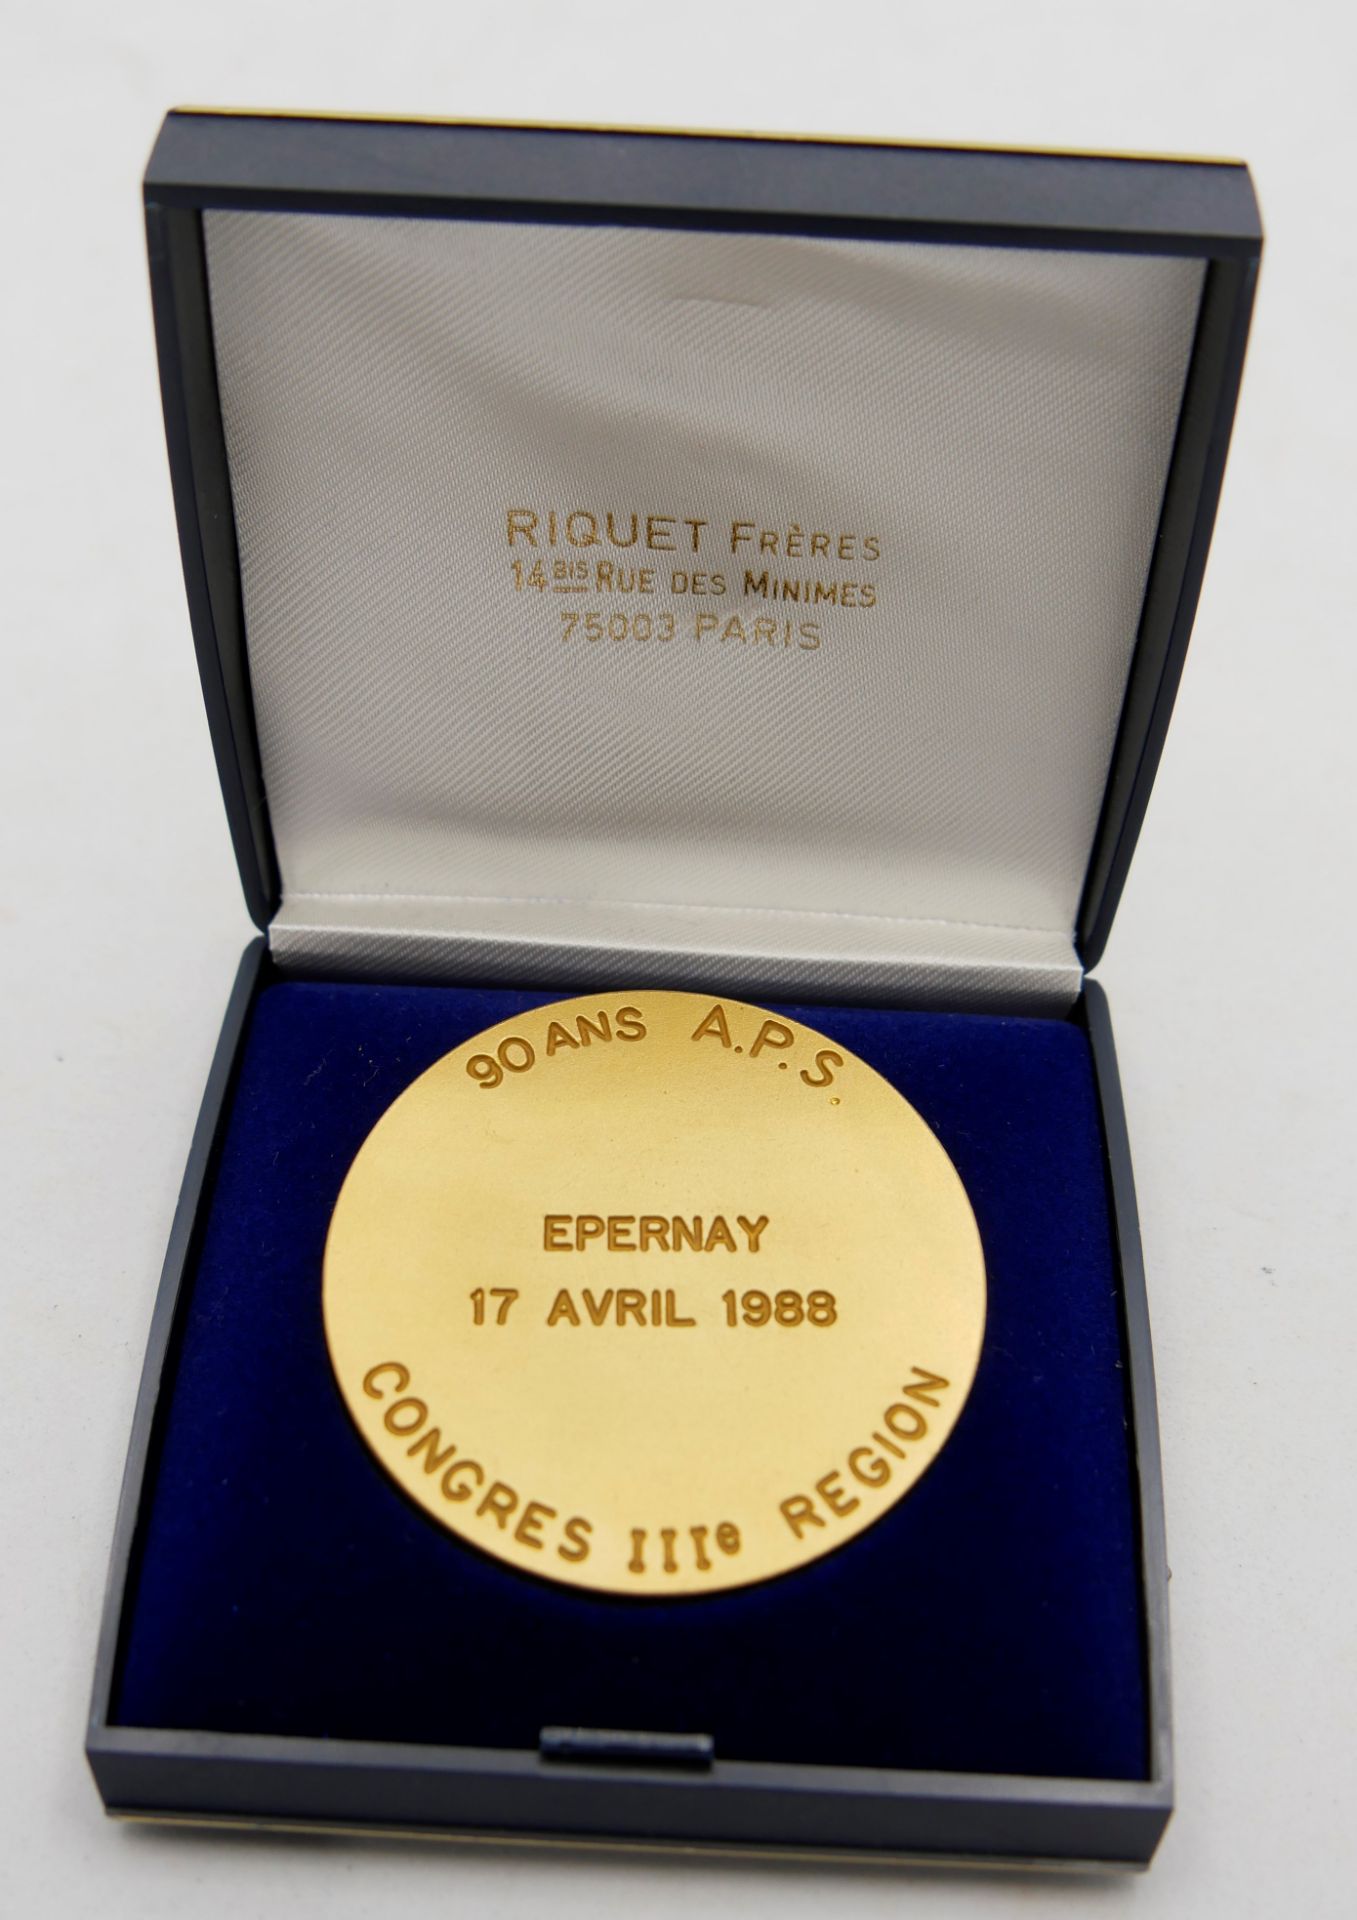 1 Medaille von Riquet Freres Paris für 90 ANS A.P.S. Epernay, 17 Avril 1988 Congress III, Region - Bild 3 aus 4